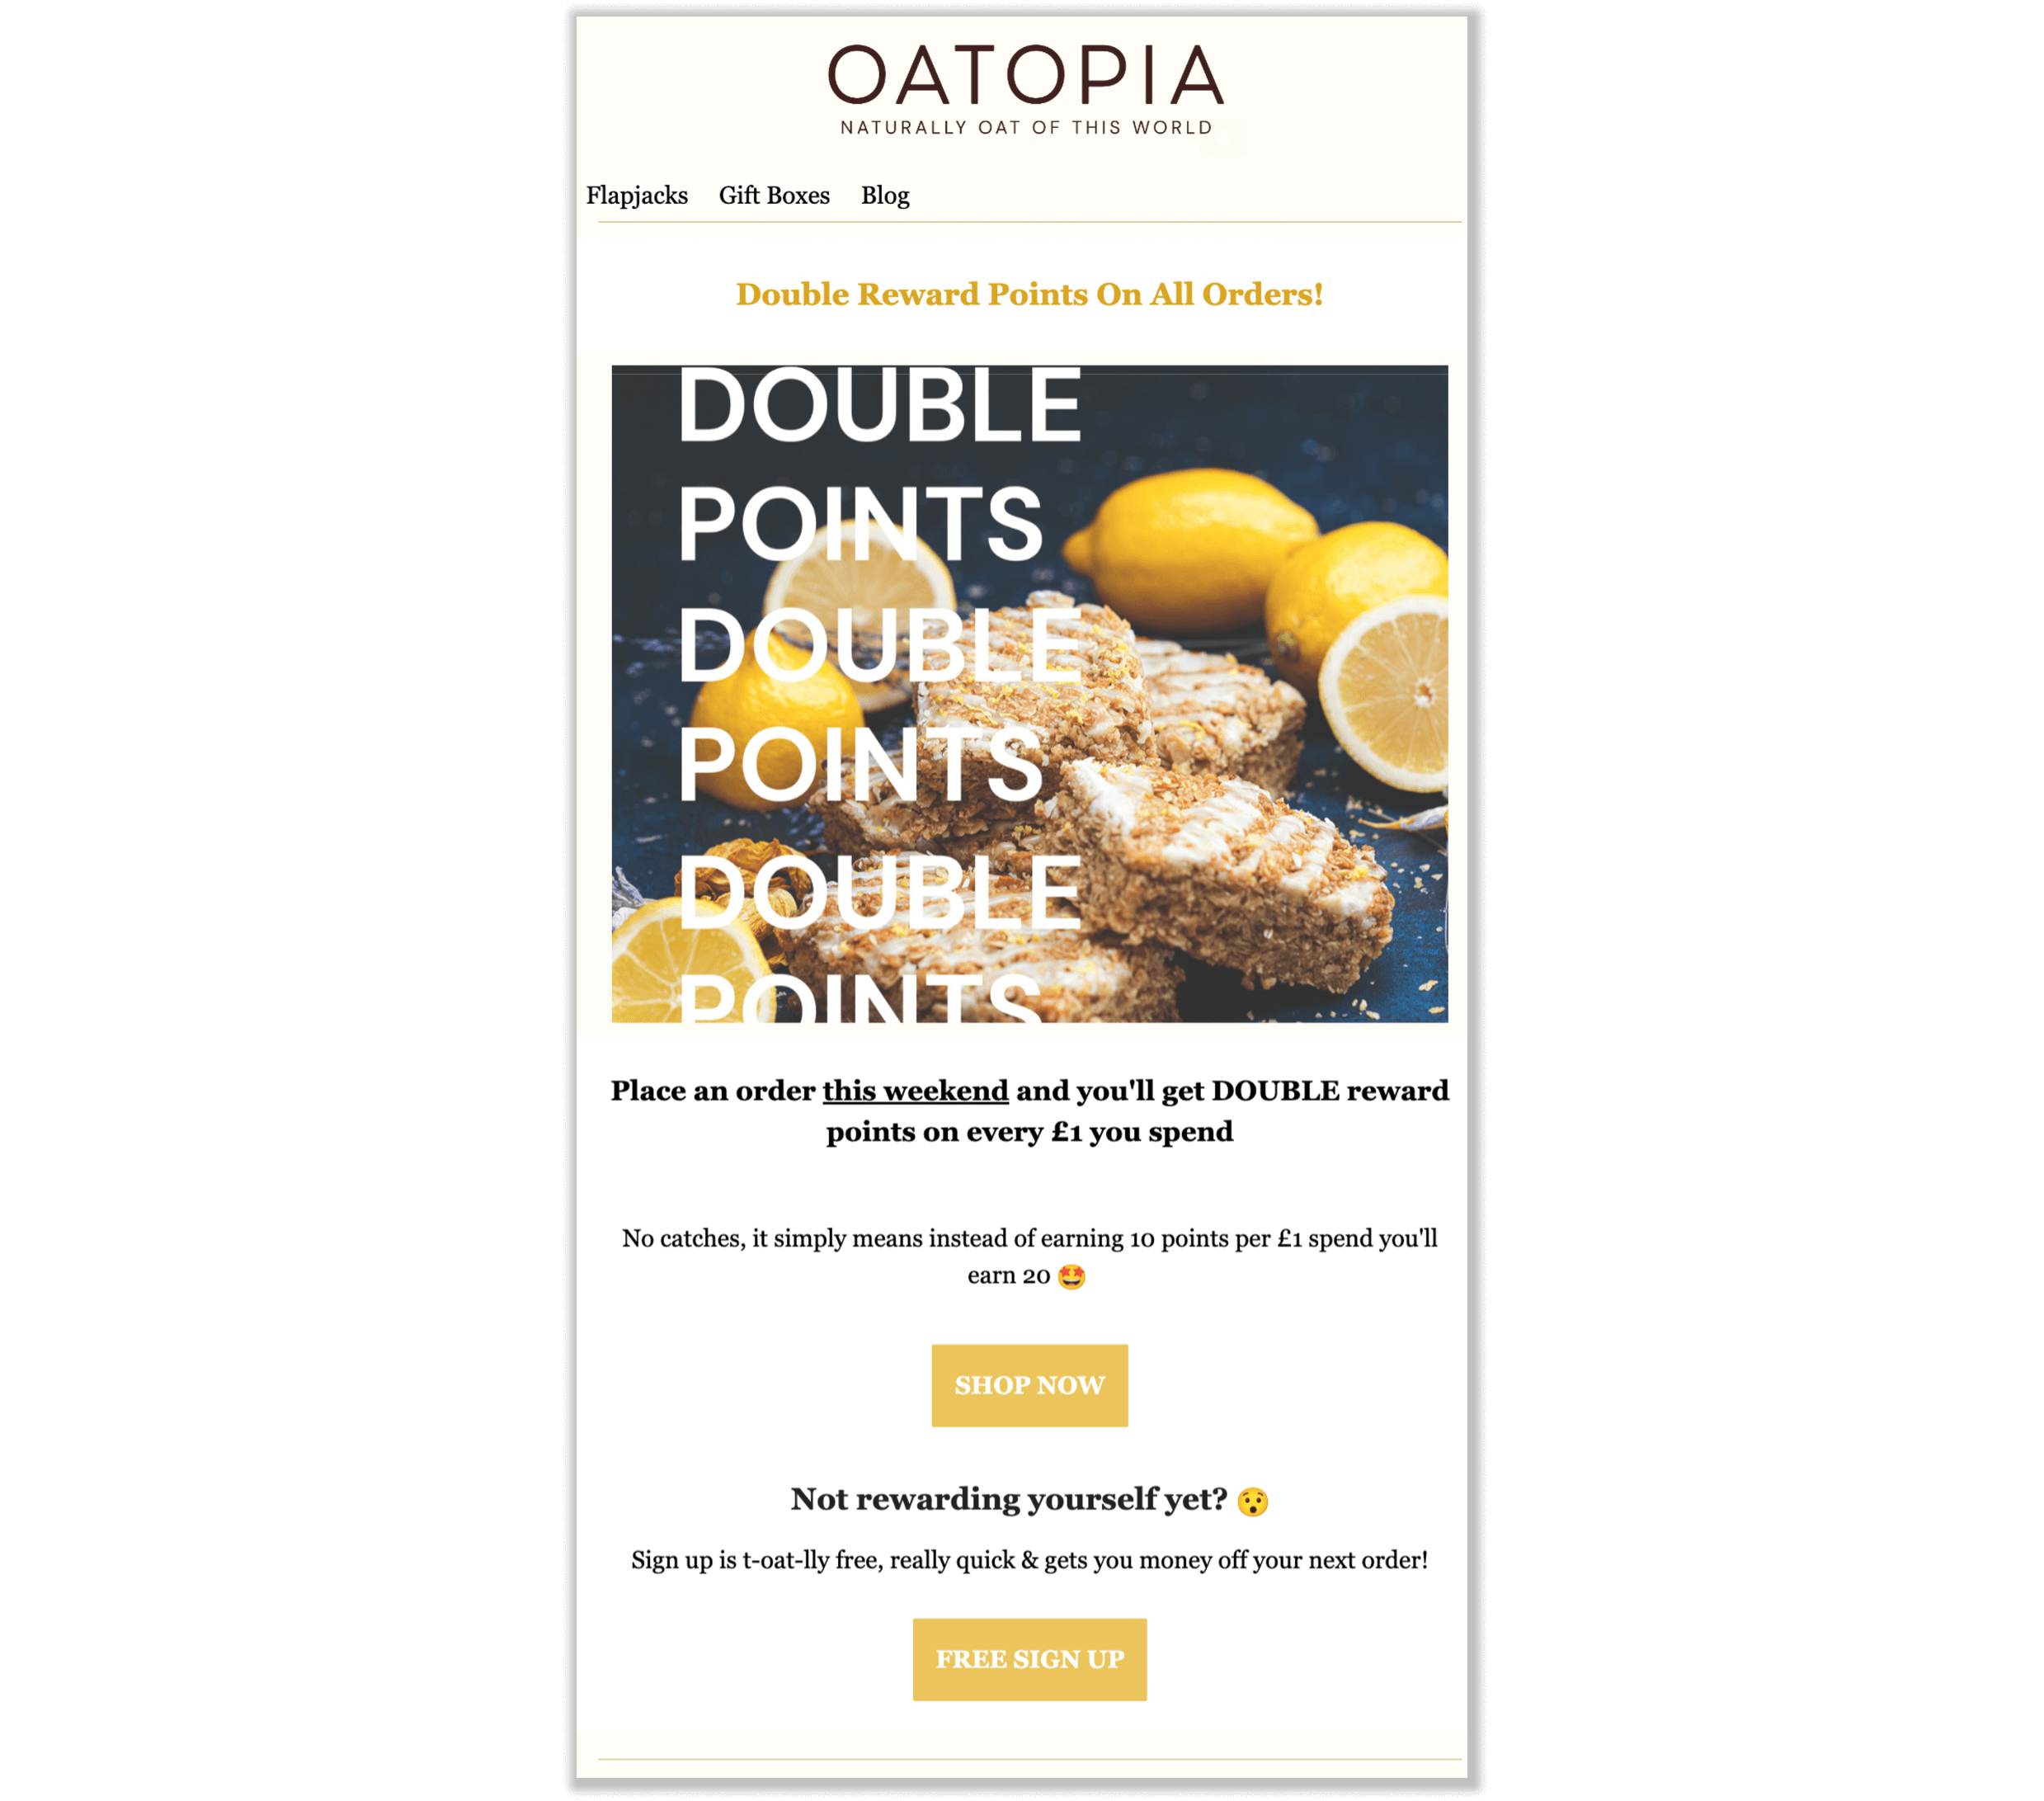 Tangkapan layar email dari Oatopia yang menjelaskan kampanye poin bonusnya. Email bermerek menjelaskan bahwa pelanggan bisa mendapatkan poin hadiah ganda untuk setiap £1 yang dibelanjakan akhir pekan itu.